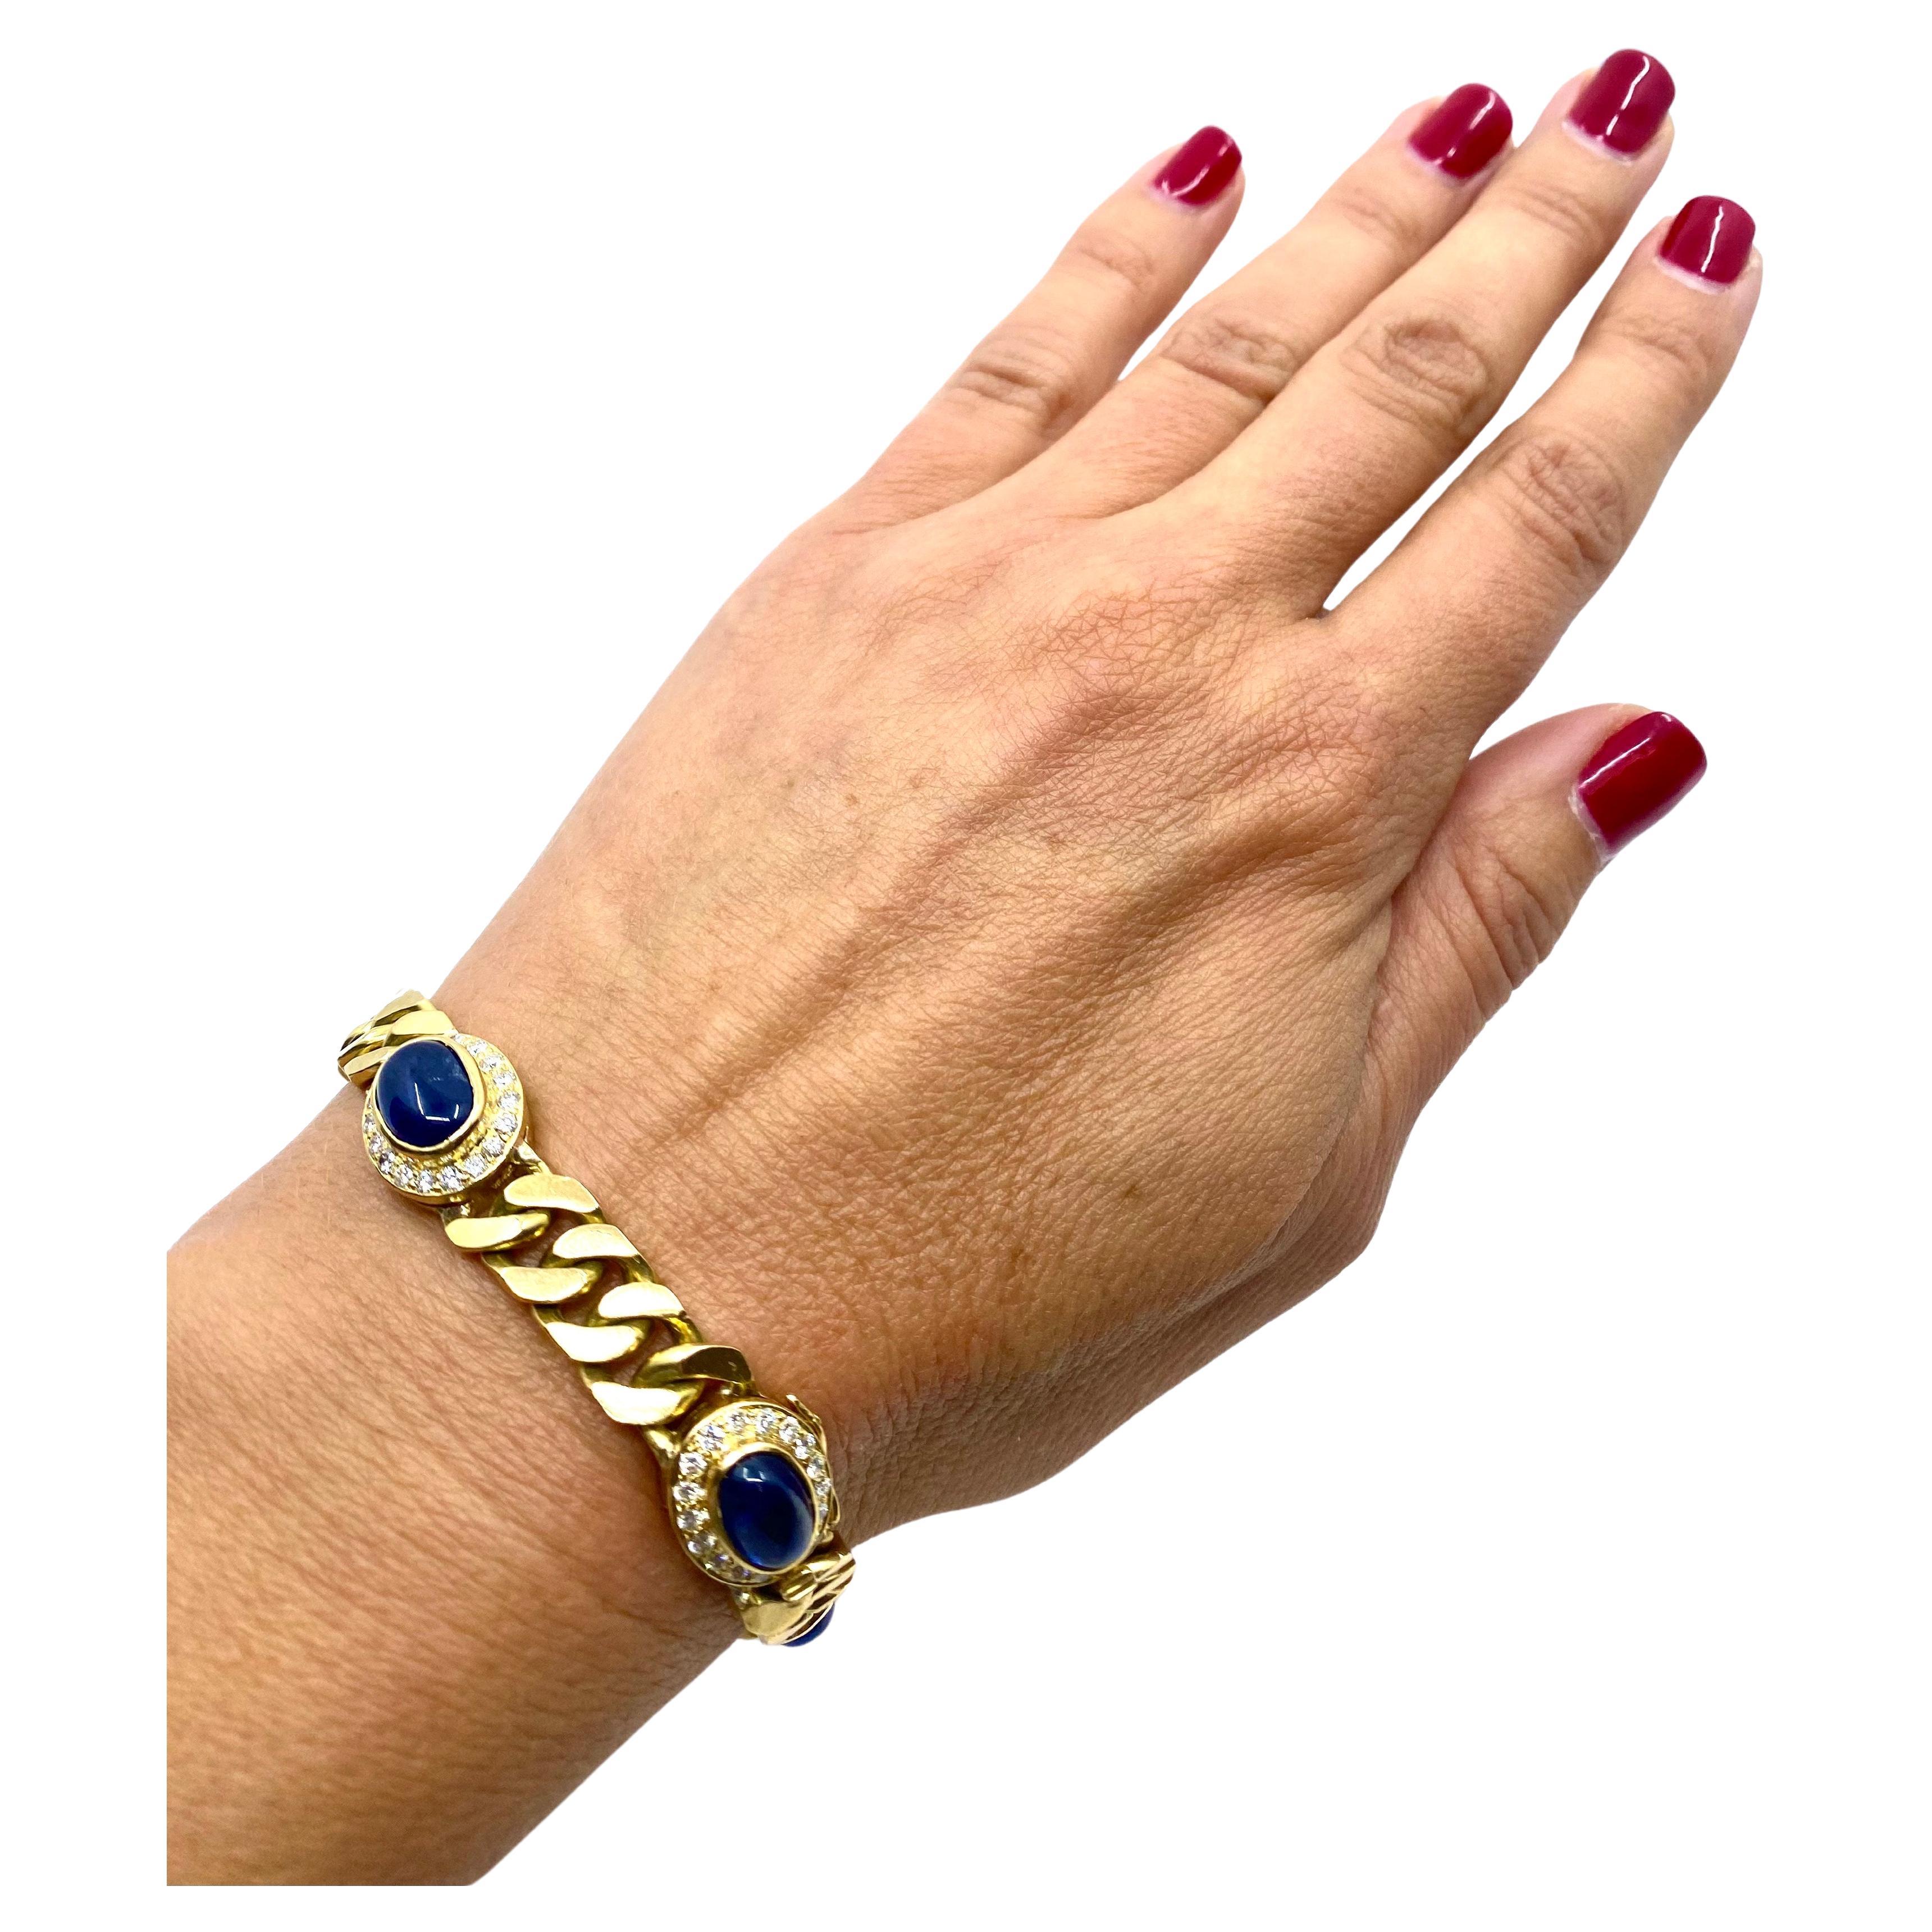 Ein klassisches Vintage-Armband aus 18 Karat Gold mit Saphiren und Diamanten. Die Saphire sind im Cabochon-Schliff und in der Lünette gefasst, insgesamt fünf Edelsteine. Die Diamanten sind im Rundschliff gefasst und rahmen die Saphire wunderschön